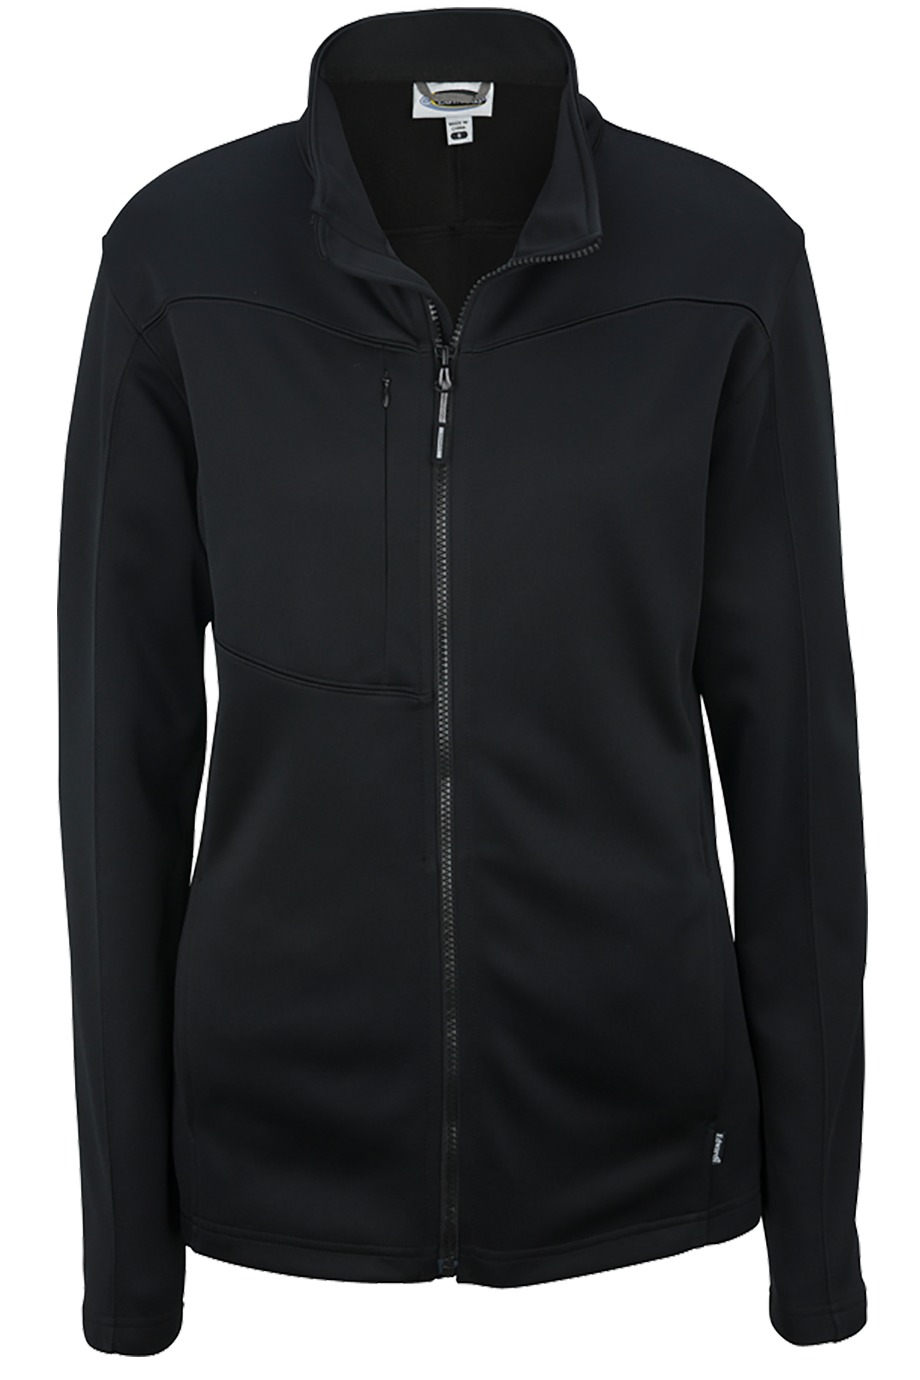 Edwards Garment 6440 - Women's Performance Tek Jacket